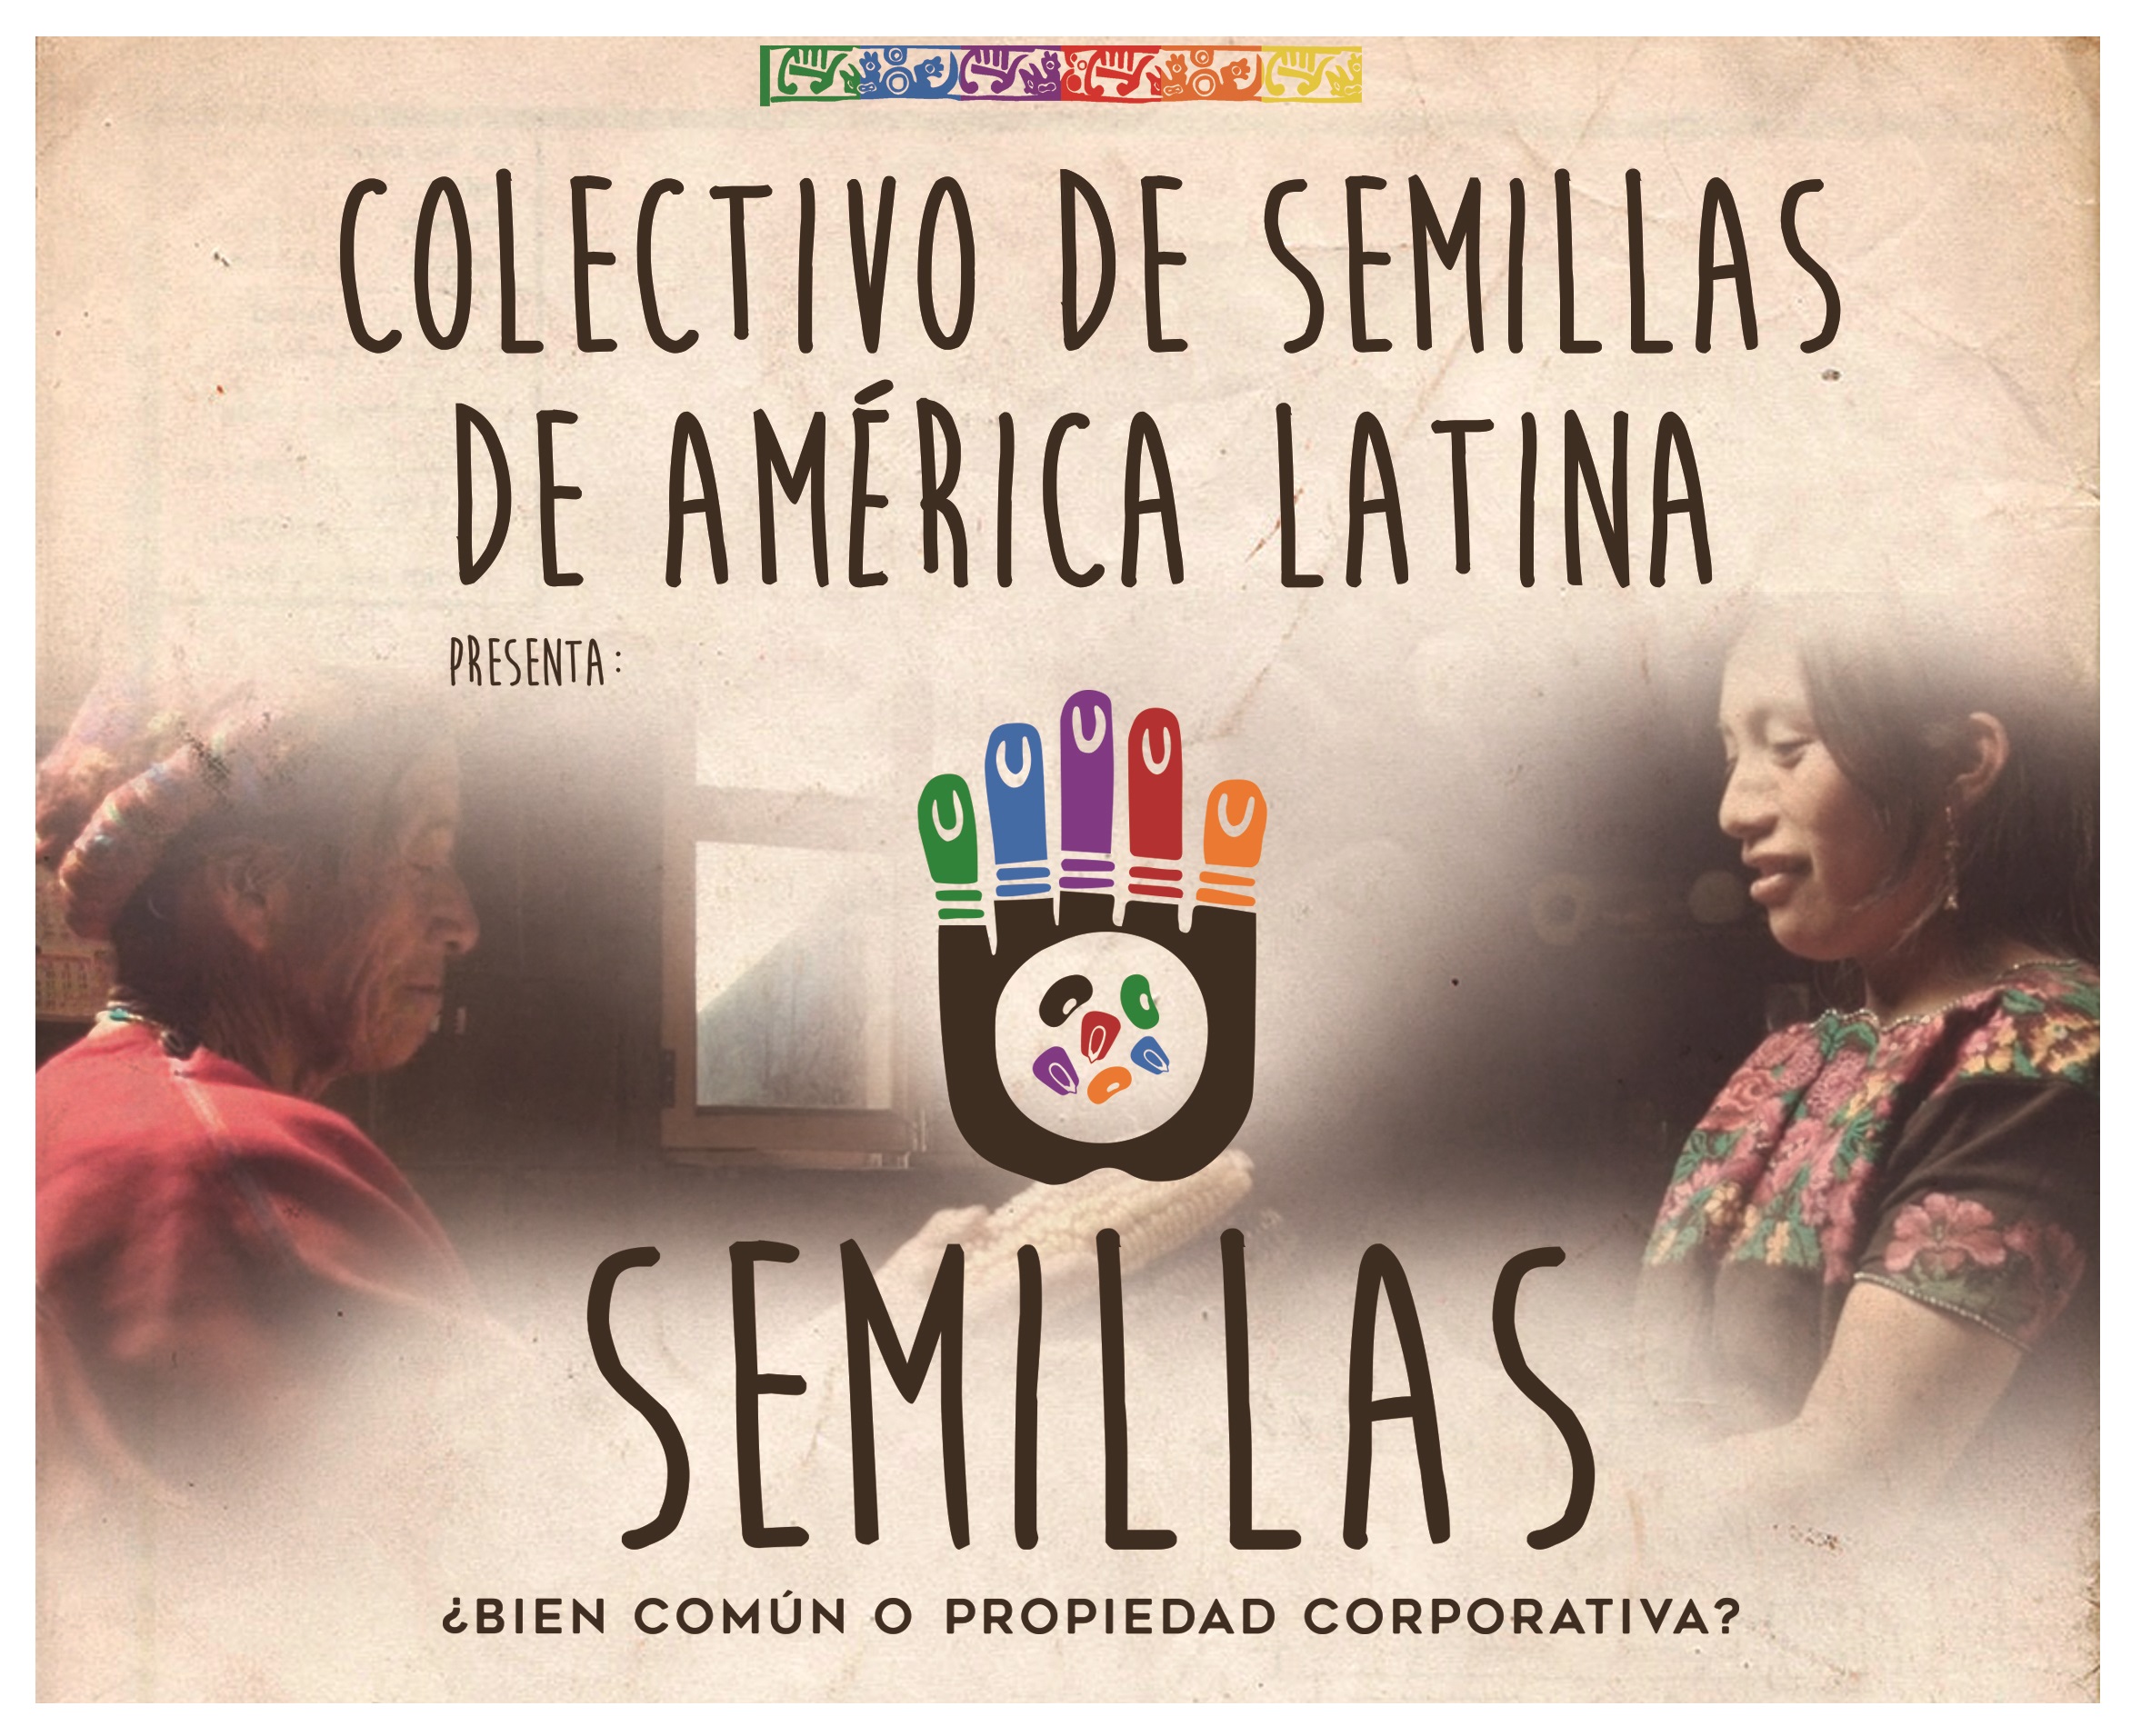 Grafica alusiva a Colectivo de Semillas de América Latina presenta: Semillas ¿Bien común o propiedad corporativa?